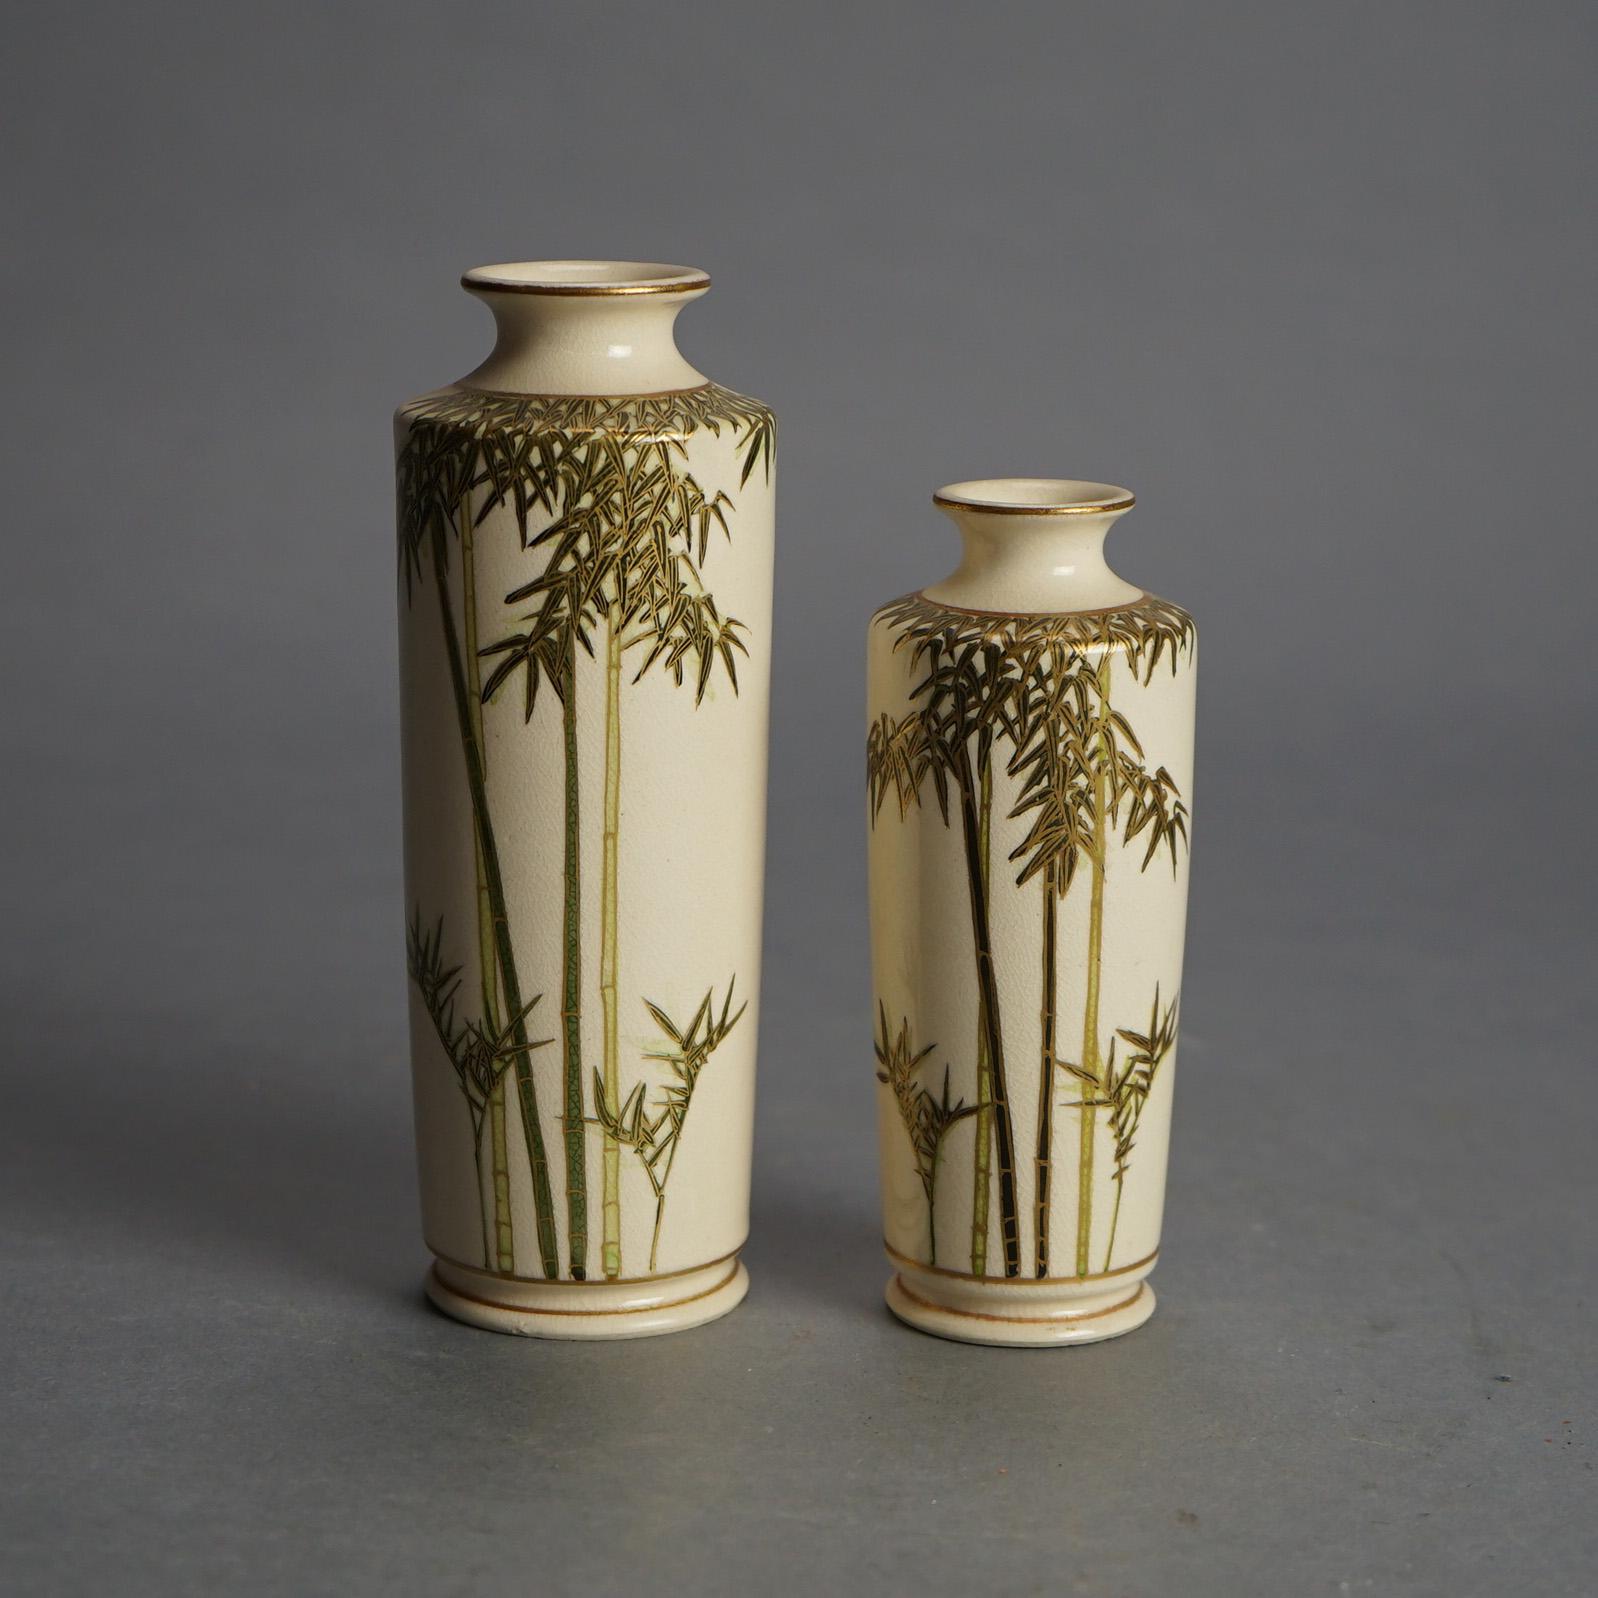 Paar antike japanische Satsuma-Keramikvasen mit Bambus und vergoldetem Dekor, signiert, C1920

Maße - 6,5 